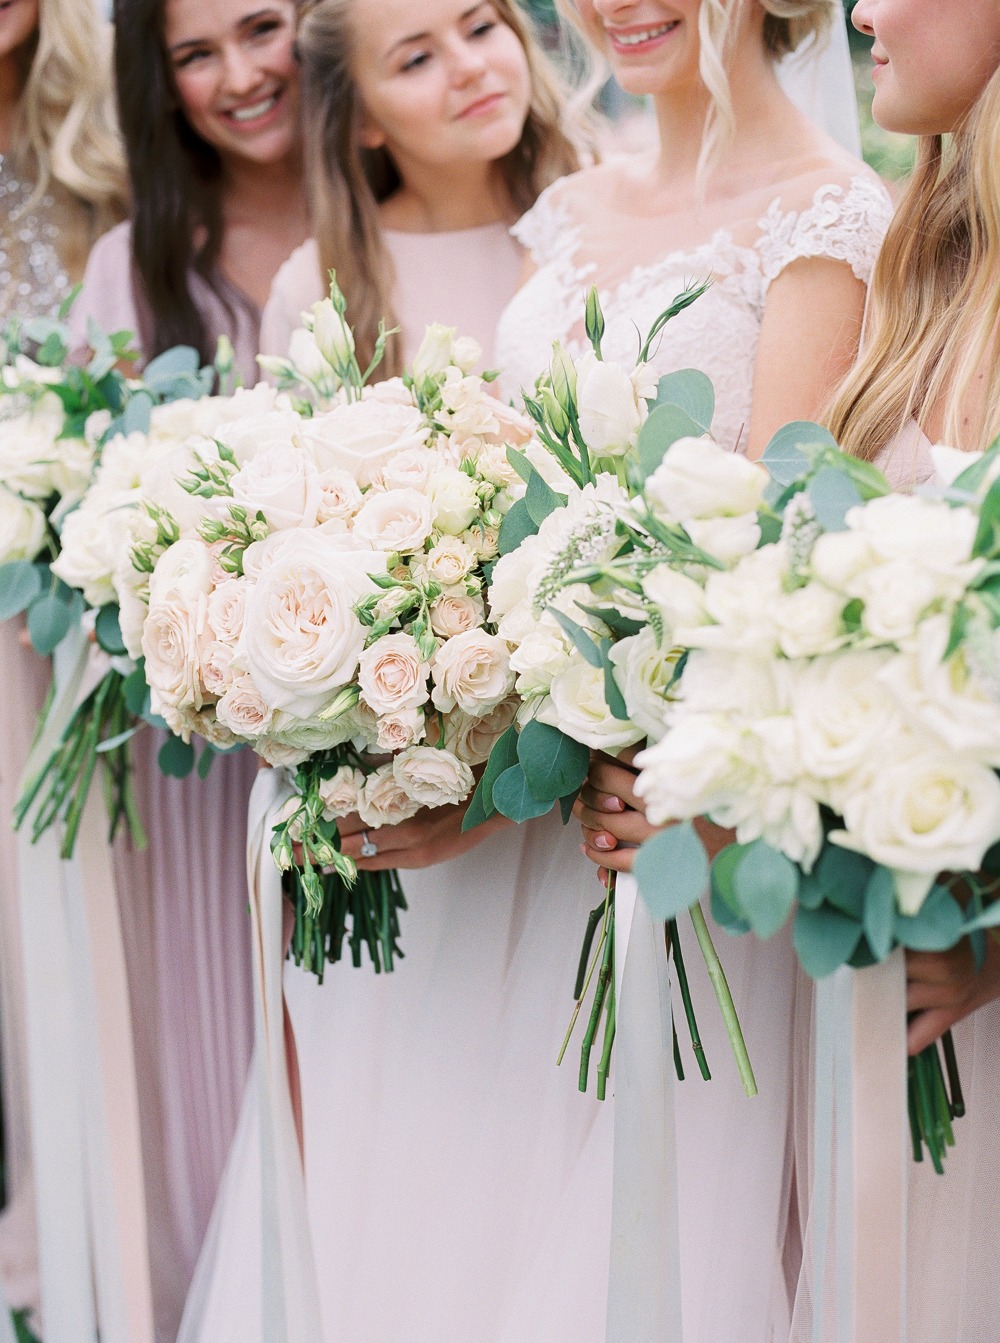 White rose bridal bouquet